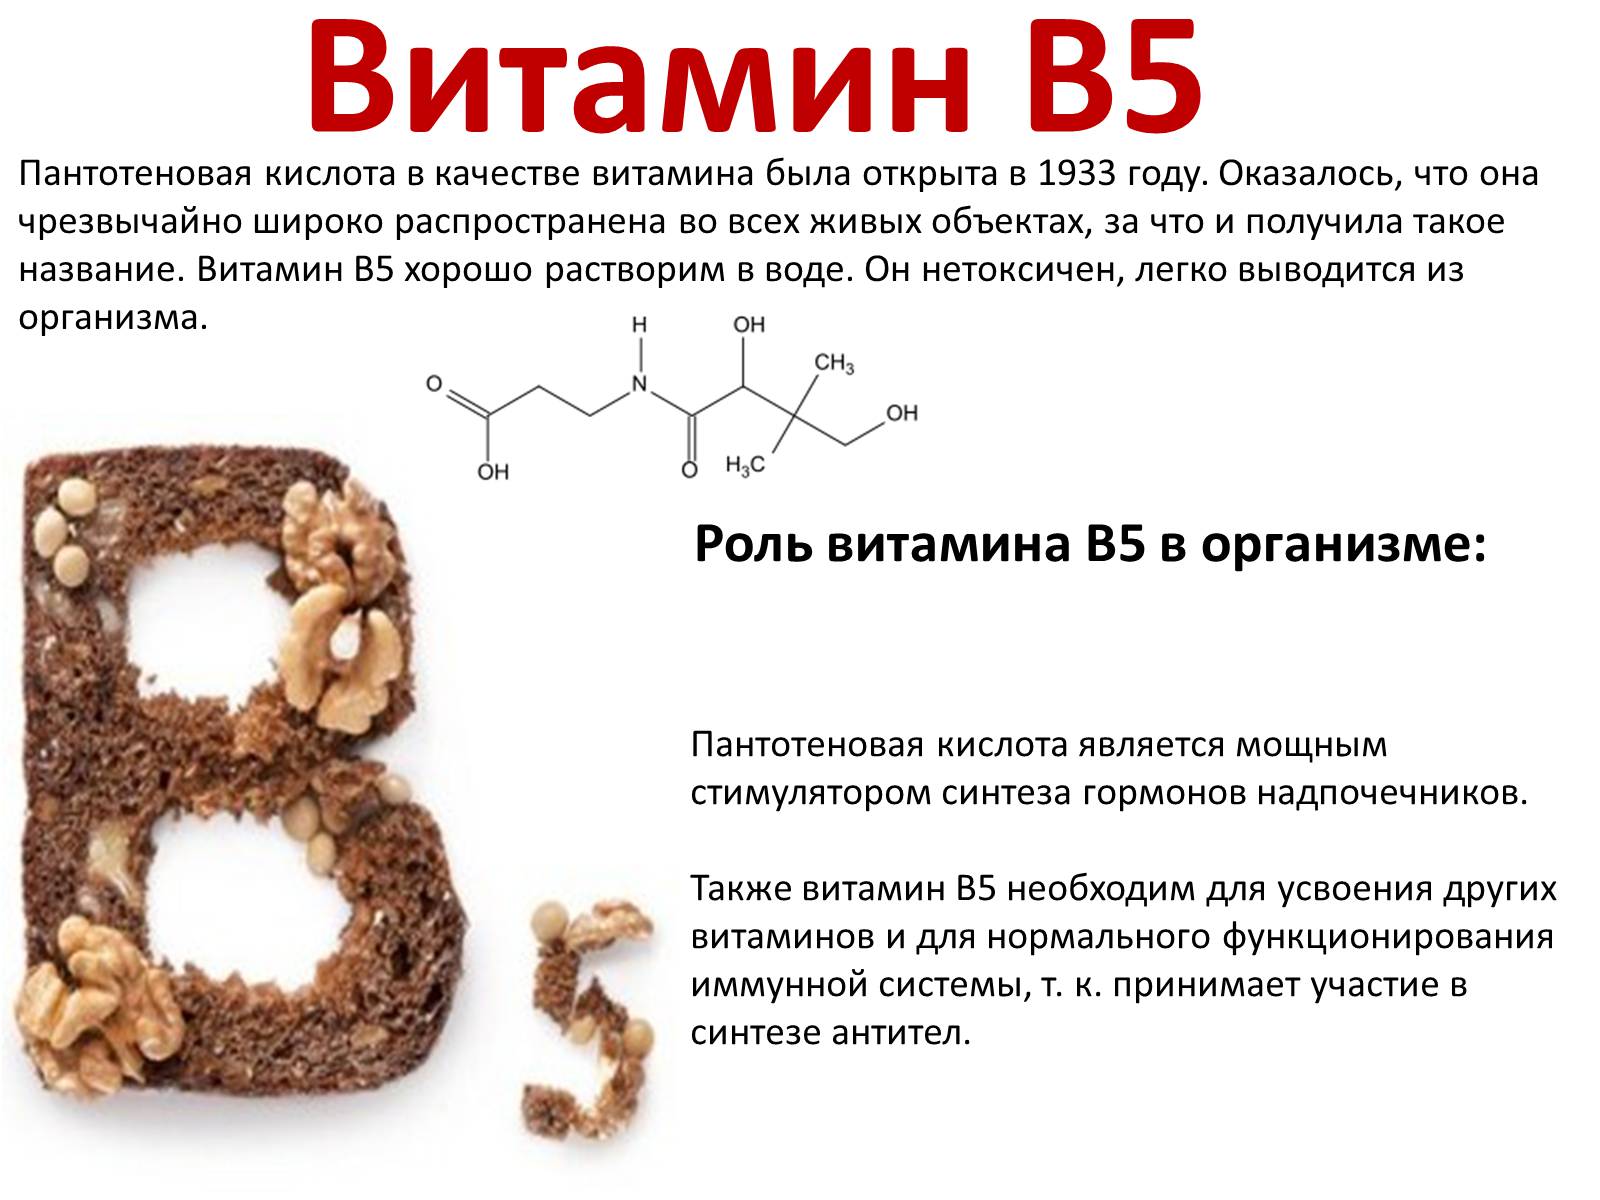 Витамин б вред. Витамин б5 пантотеновая кислота. Витамин в5 пантотеновая кислота функции. Витамин в5 или пантотеновая кислота. Роль в организме витамина b5.